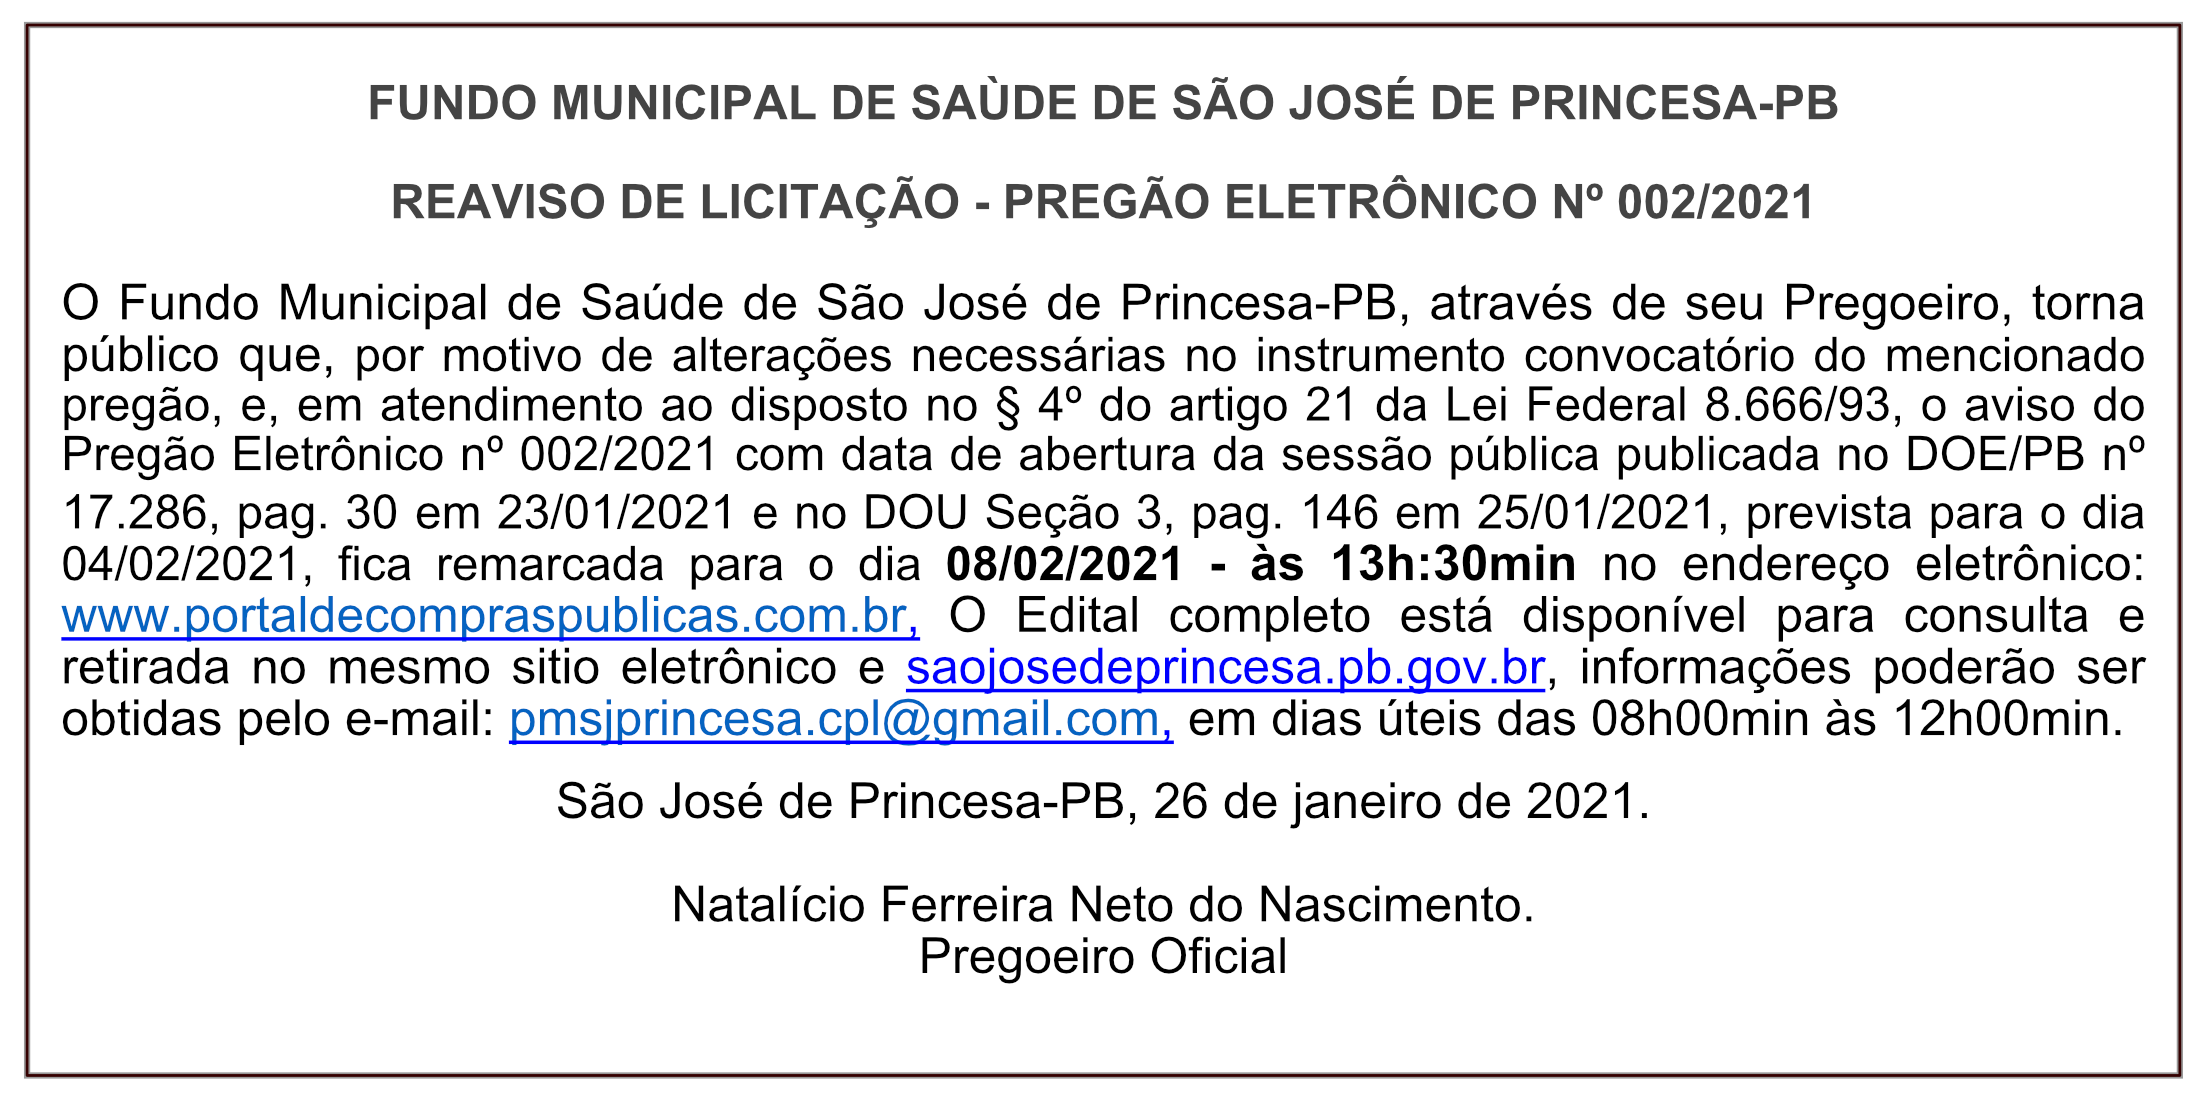 FUNDO MUNICIPAL DE SAÙDE DE SÃO JOSÉ DE PRINCESA – REAVISO DE LICITAÇÃO – PREGÃO ELETRÔNICO Nº 002/2021